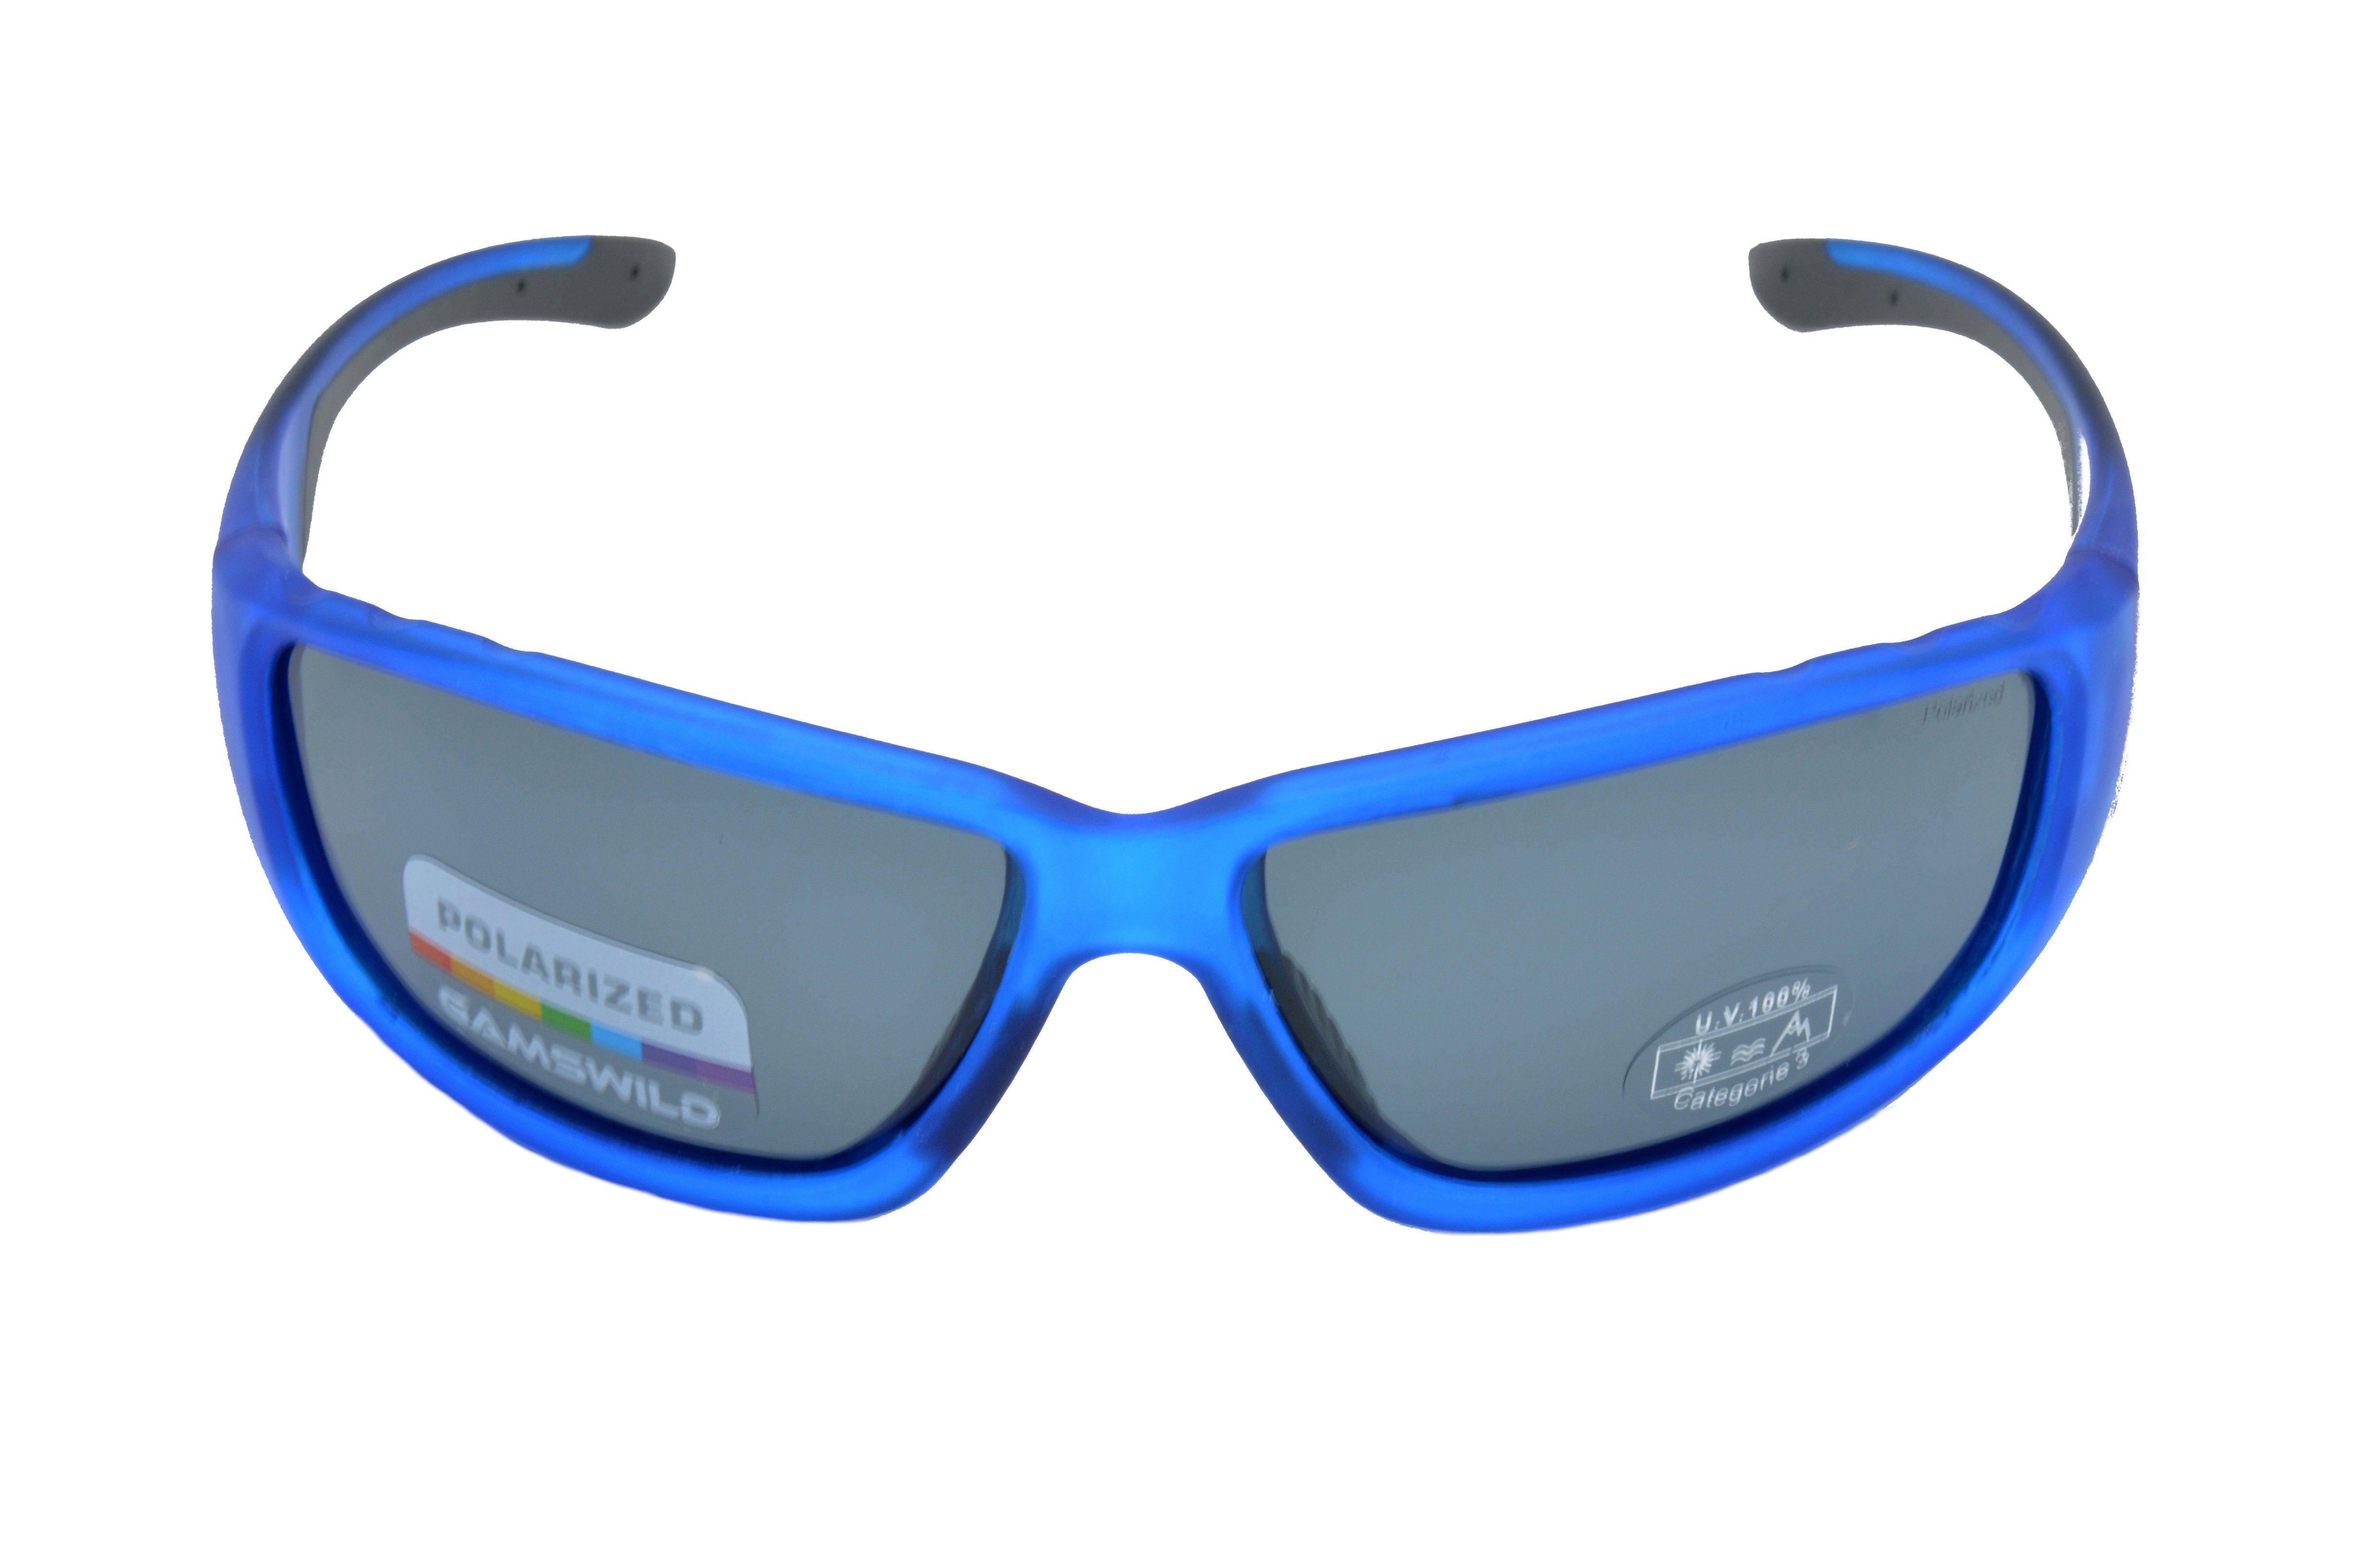 Gamswild Sonnenbrille WS9331 Sportbrille Damen grün, blau halbtransparente Unisex polarisiert rot, Herren Skibrille Fahrradbrille Fassung